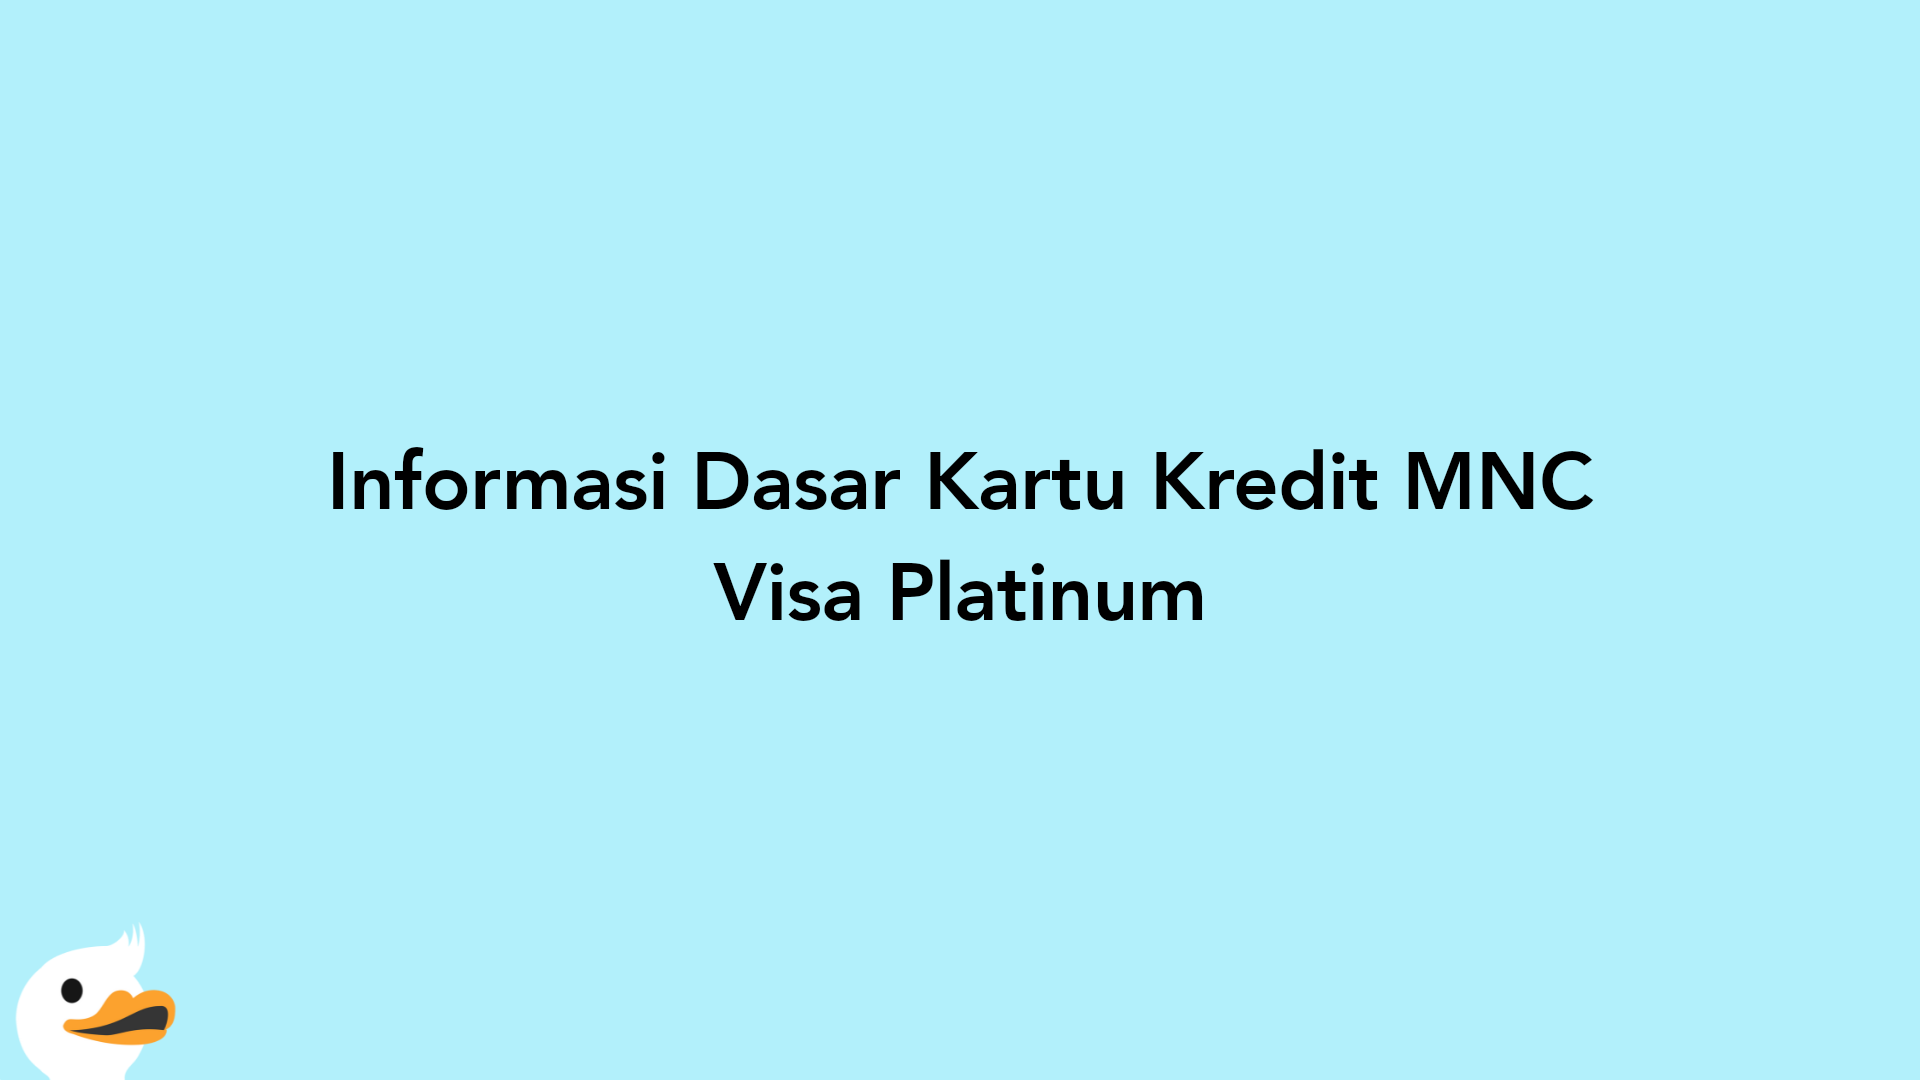 Informasi Dasar Kartu Kredit MNC Visa Platinum